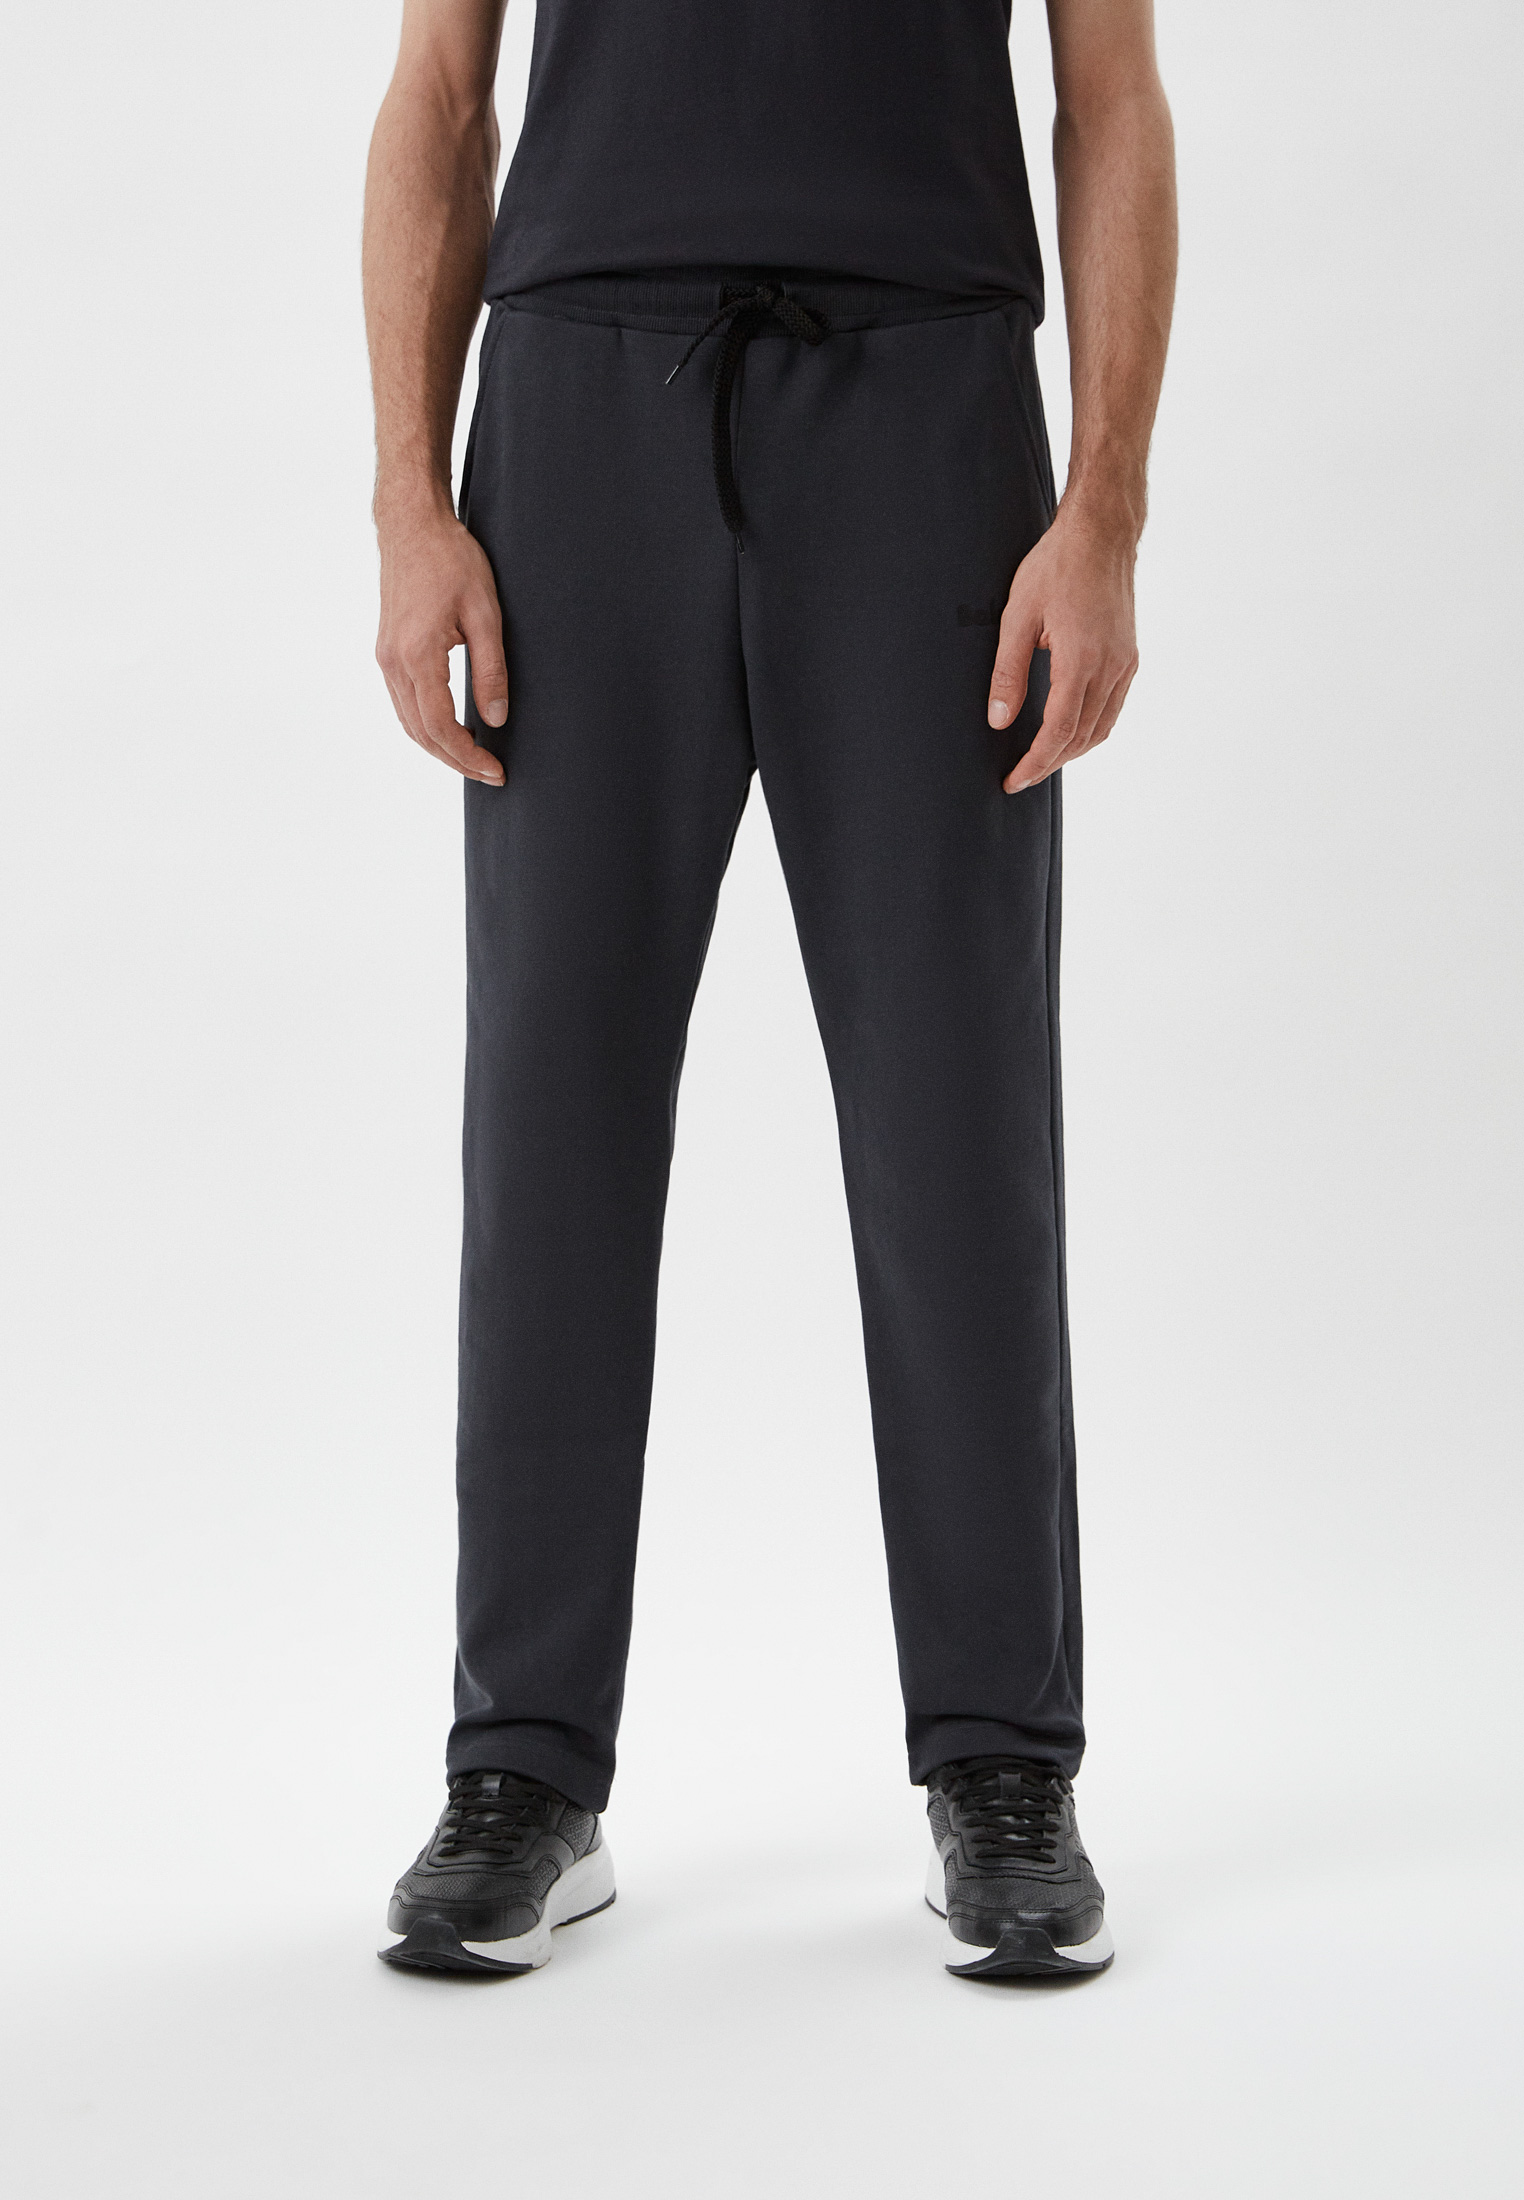 Мужские спортивные брюки Baldinini (Балдинини) M14: изображение 1